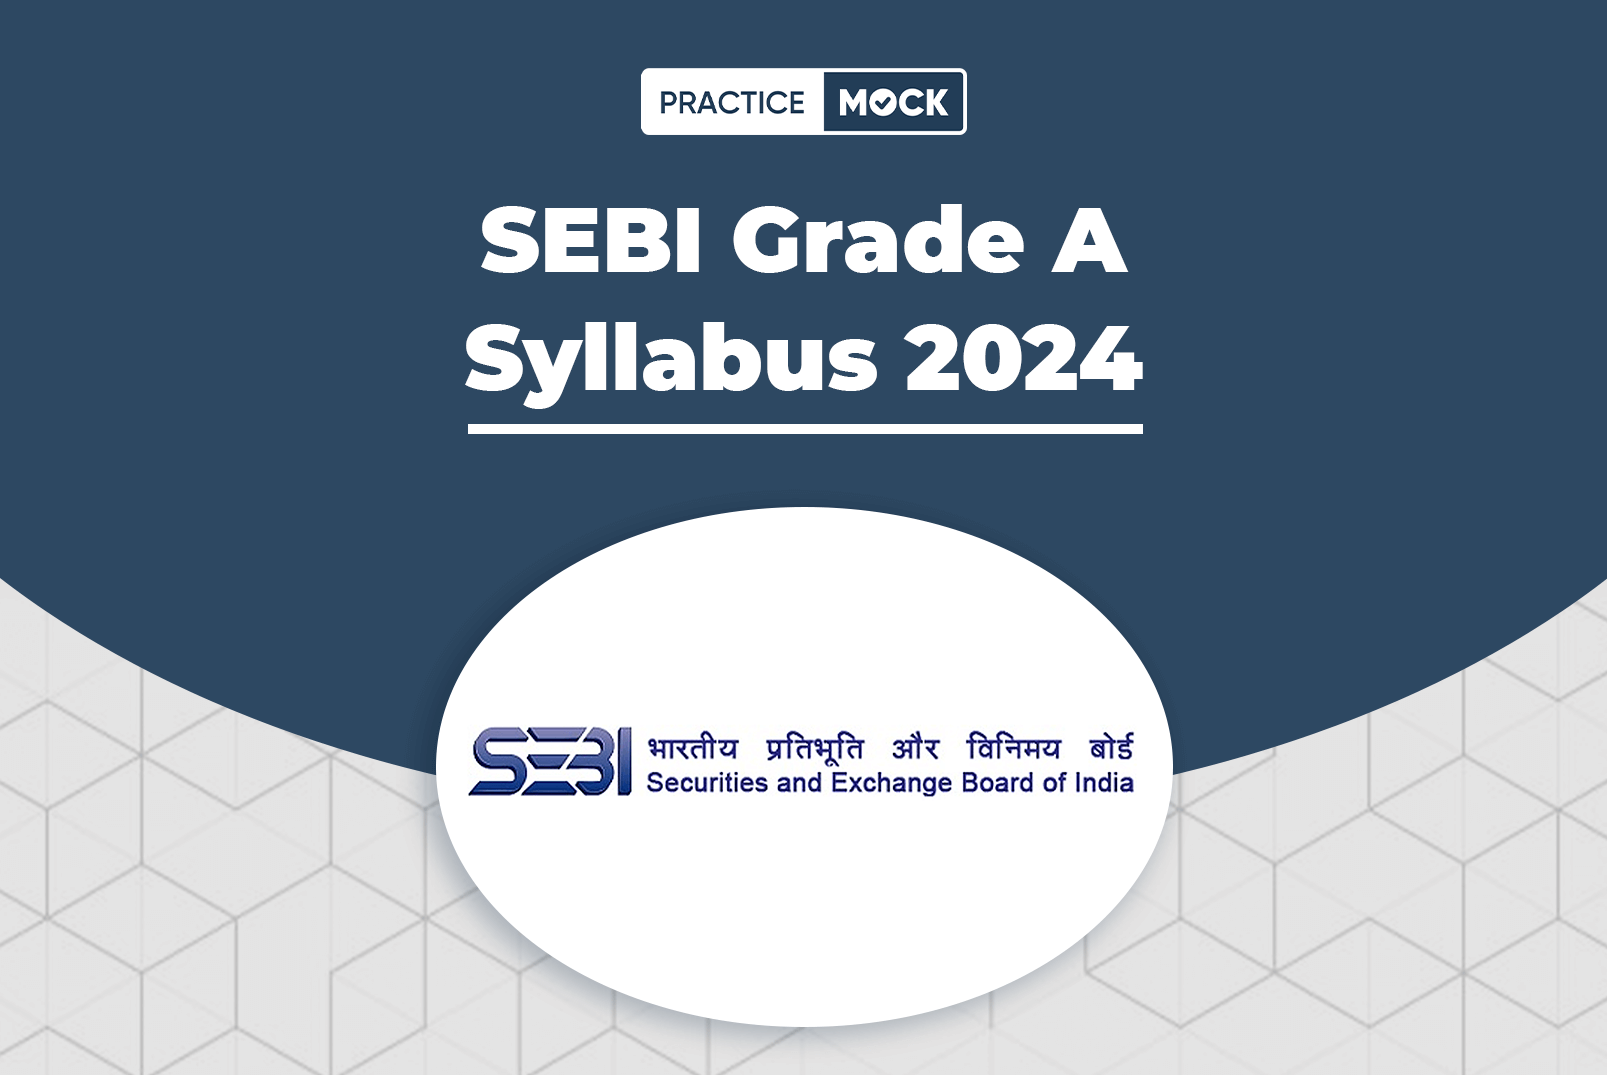 SEBI Grade A Syllabus 2024